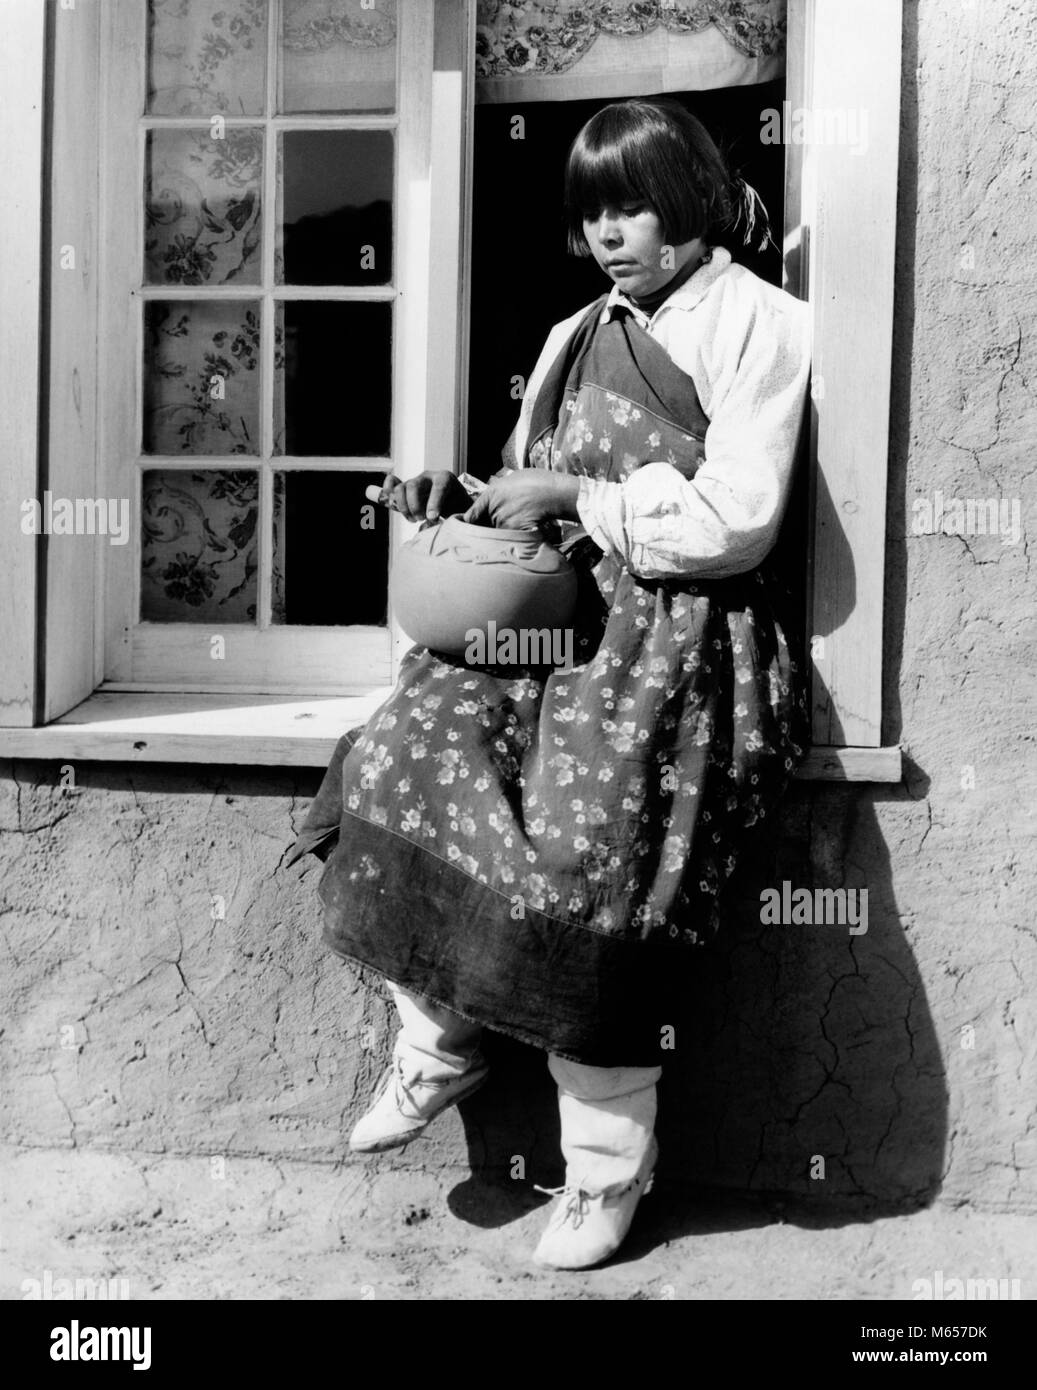 1930er Jahre native american Frau sitzt auf der Fensterbank Dekoration Keramik tragen typische Kostüm San Ildefonso Pueblo COLORADO USA-i 1247 HAR 001 HARS ARTIST SPIRITUALITÄT VERTRAUEN NOSTALGIE KERAMIK NORDAMERIKA 20-25 Jahre 25-30 JAHRE NORDAMERIKANISCHEN einzelnes Objekt STÄRKE WISSEN FENSTERBÄNKE 18-19 JAHRE INNOVATION STOLZ BEHÖRDE KREATIVITÄT NATIVE AMERICAN PUEBLO SAN ILDEFONSO, NEW MEXIKO TYPISCHE JUNGE ERWACHSENE FRAU B&W SCHWARZ UND WEISS HANDWERK PERSON INDIGENEN NATIVE DRESS NM BERUFE ALTMODISCHE PERSONEN POTTER Stockfoto